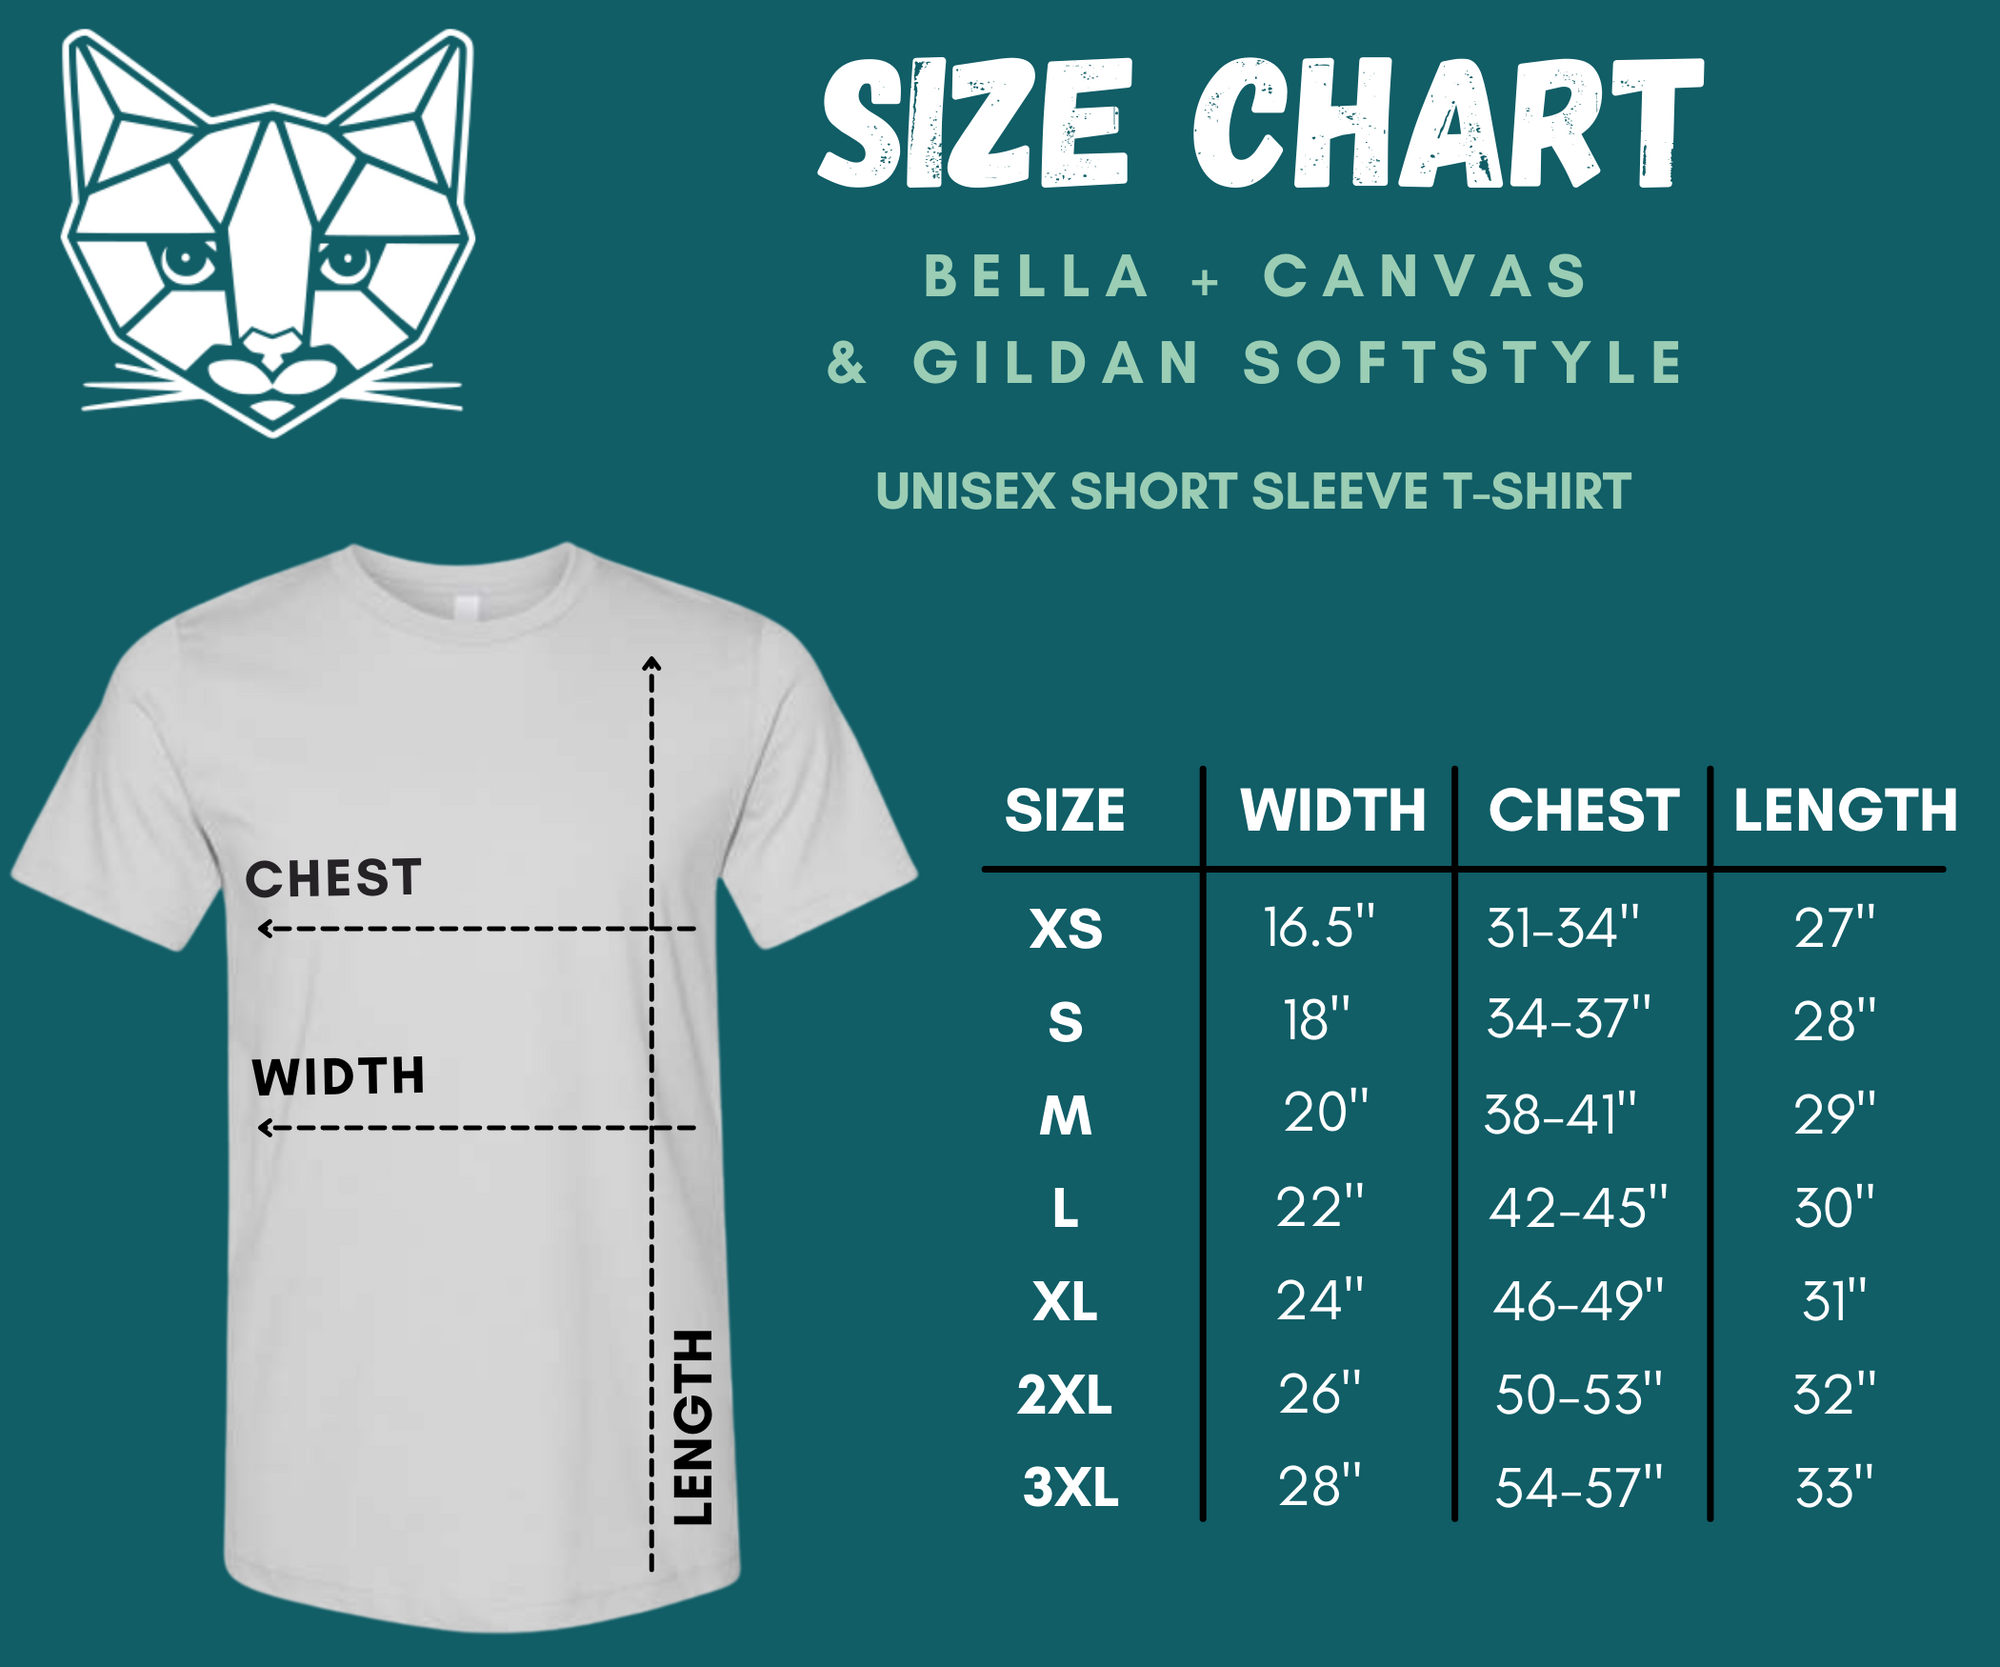 Go Get Em Tiger - T-Shirt